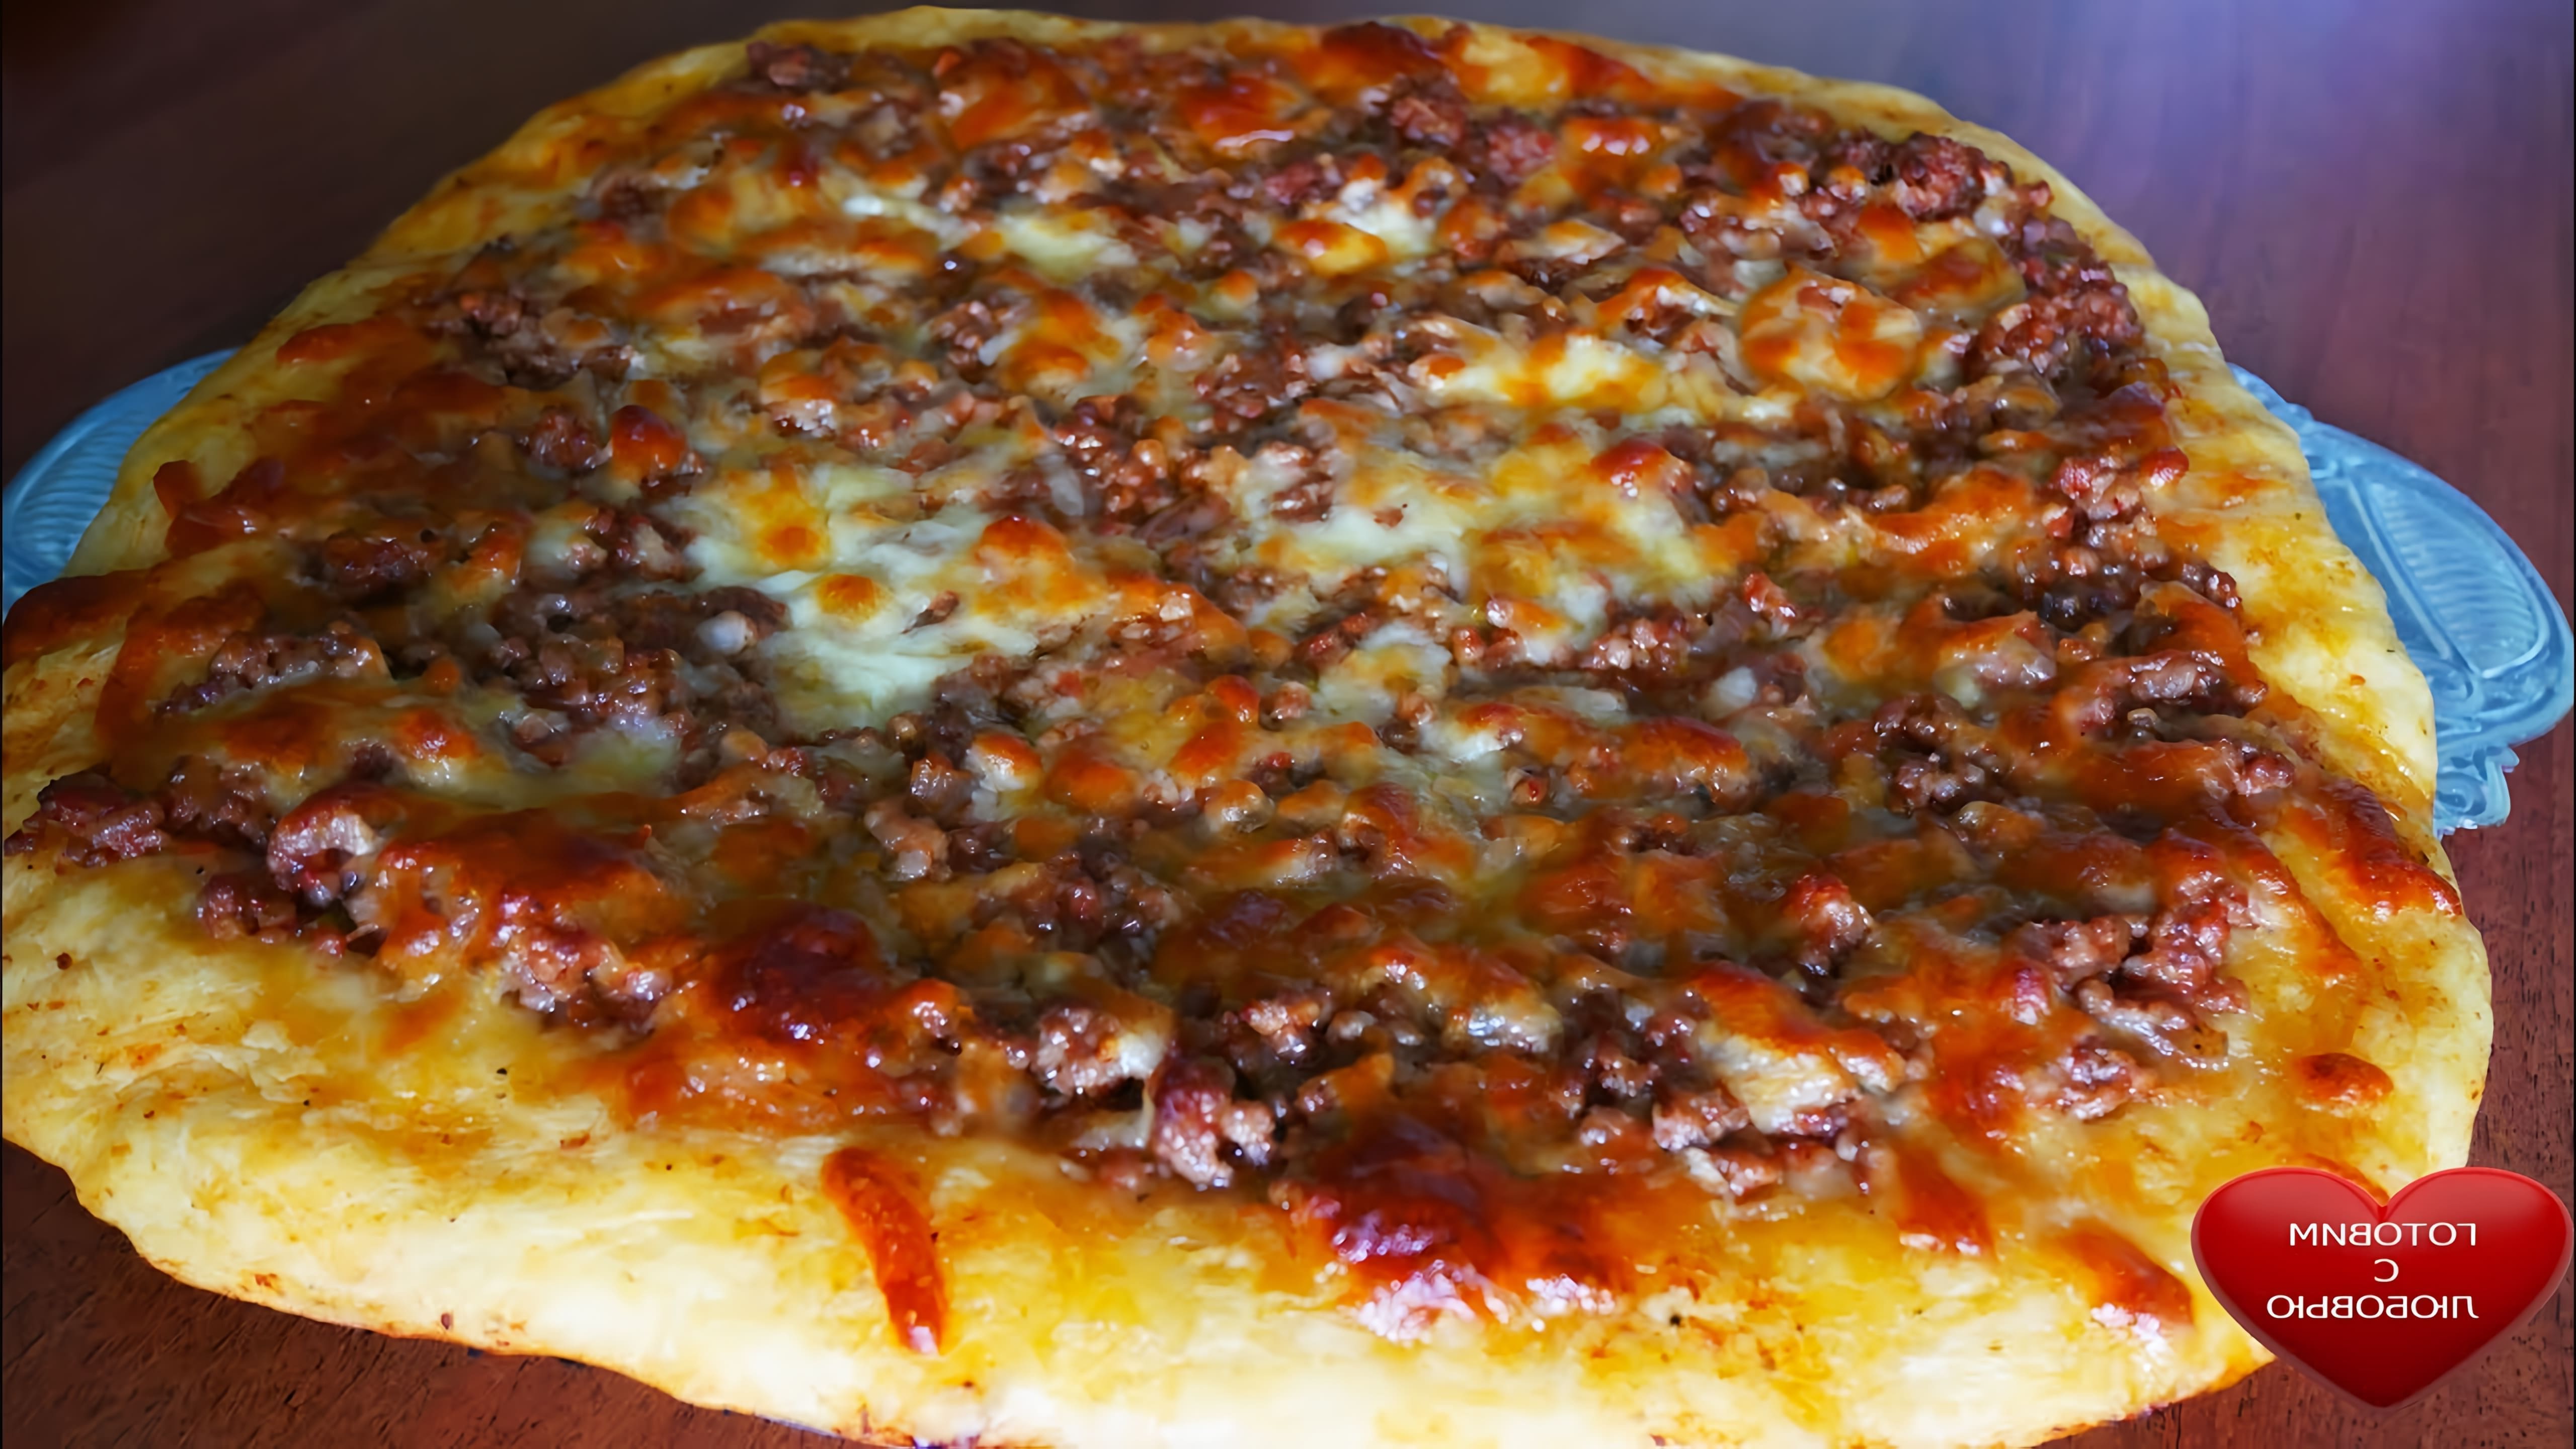 В этом видео демонстрируется процесс приготовления пиццы Болоньезе